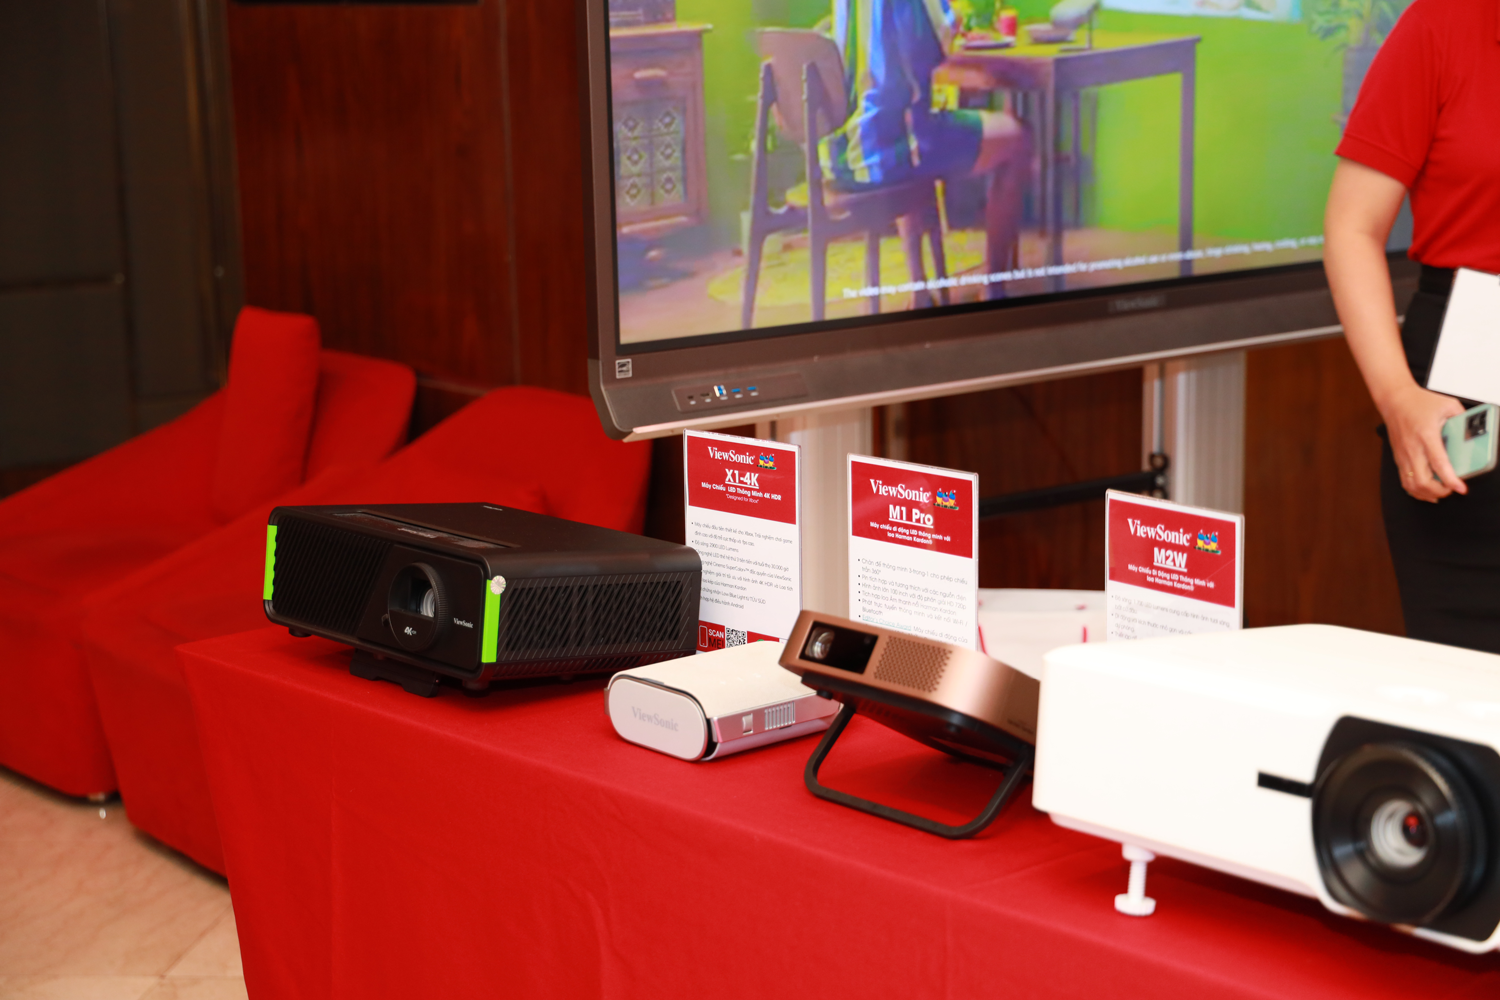 Gian trưng bày của ViewSonic: Giới thiệu các dòng máy chiếu doanh nghiệp, máy chiếu xem phim, máy chiếu di động, máy chiếu laser, màn hình tương tác ViewBoard...